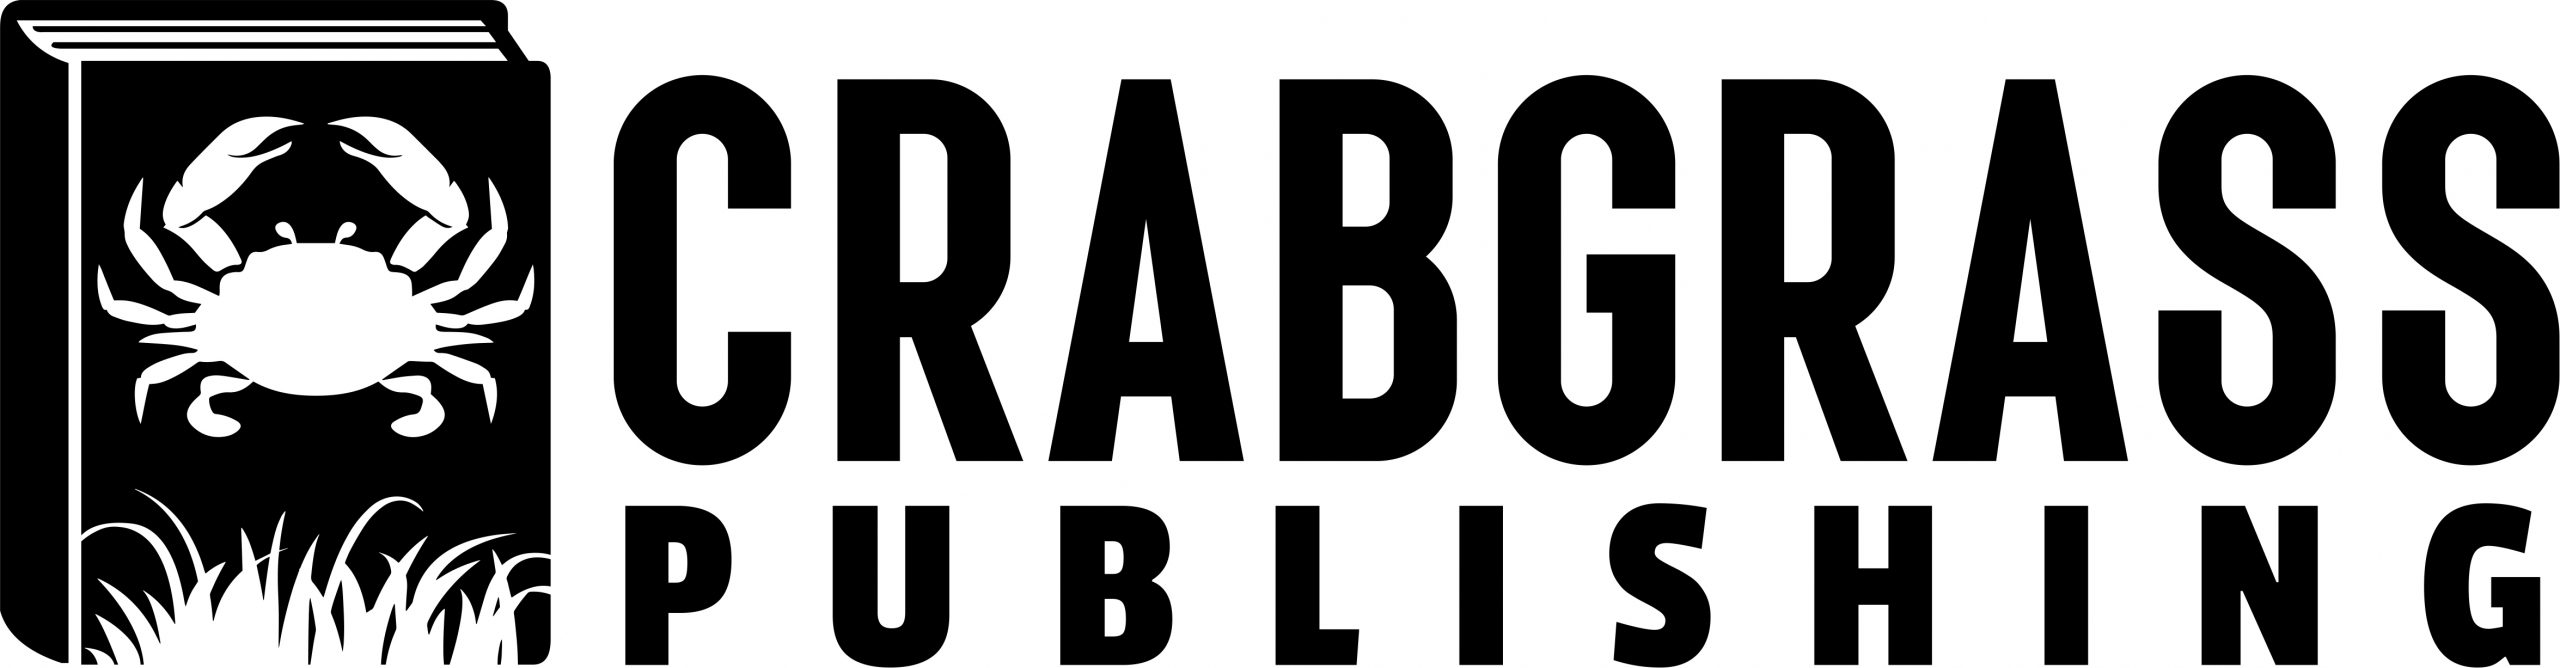 Crabgrass Publishing logo